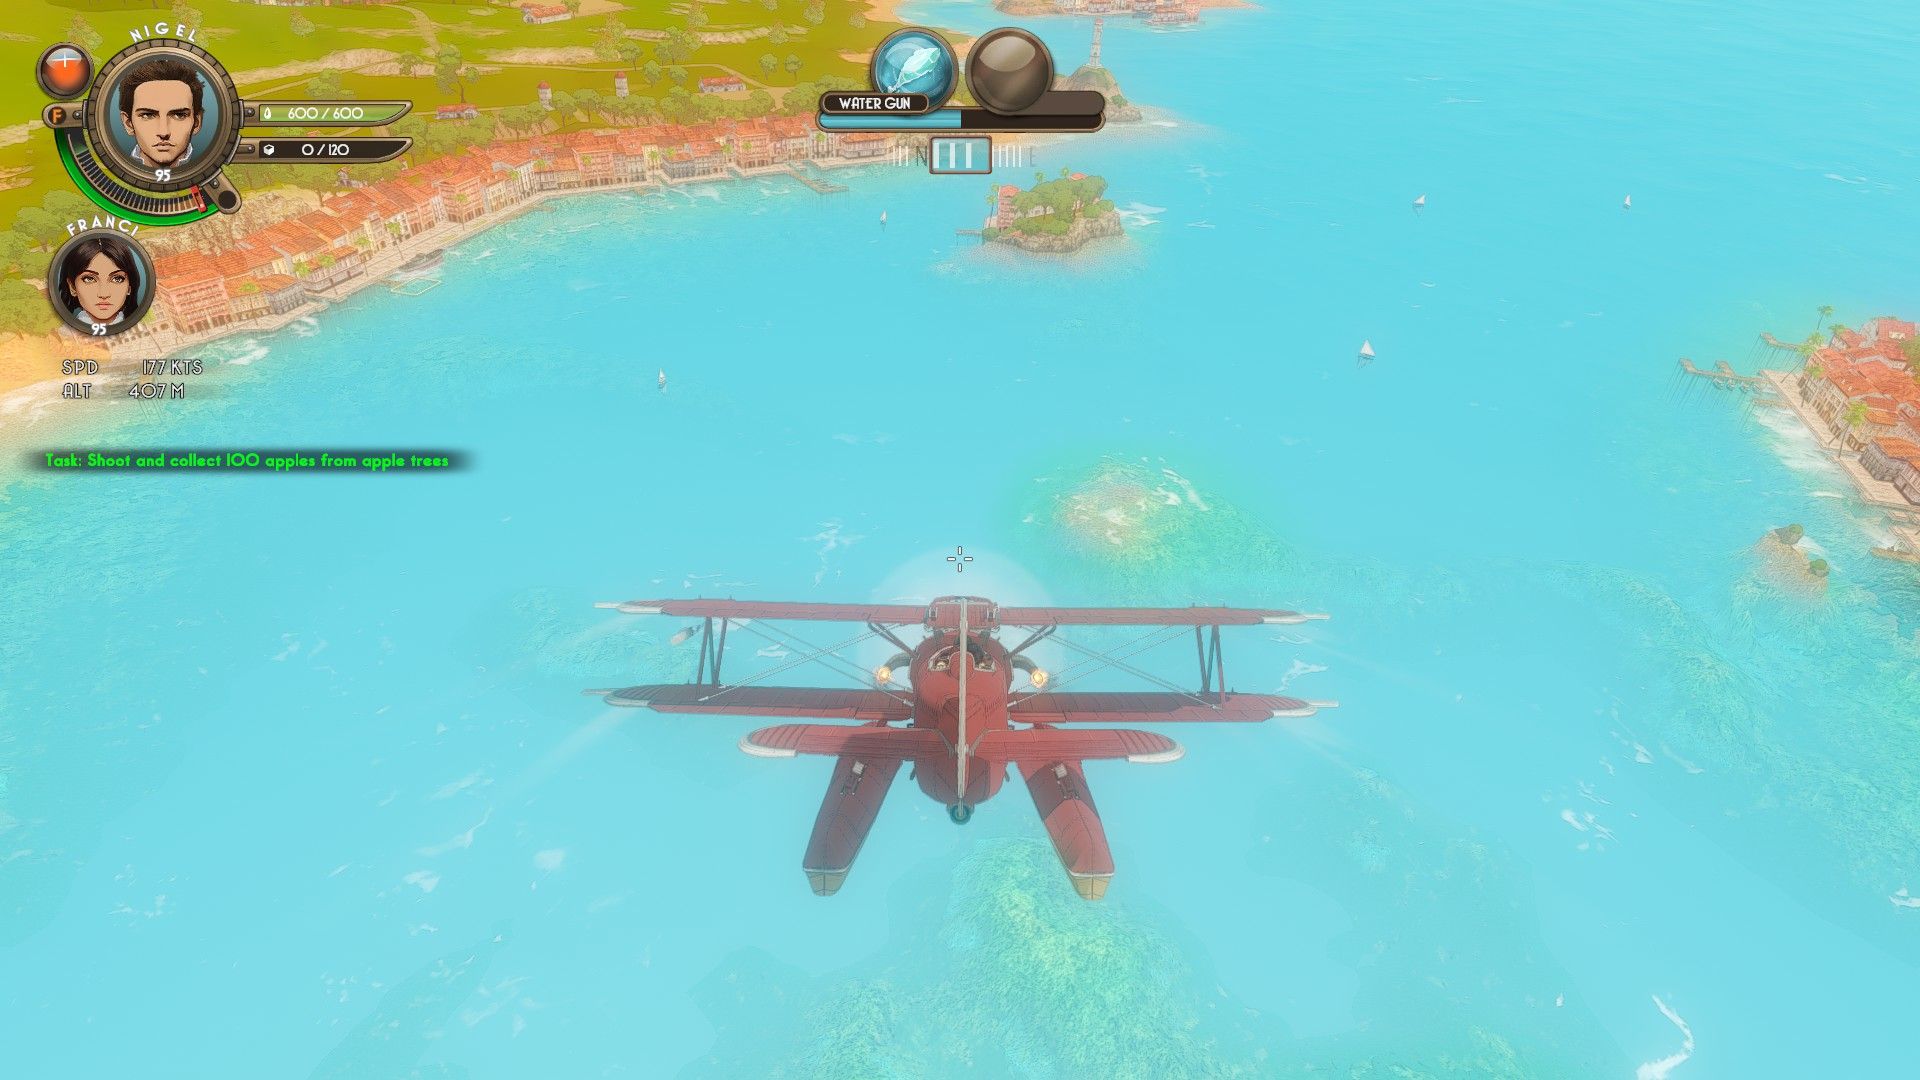 The Brew Barons : capture d'écran d'un avion volant au dessus d'une île paradisiaque